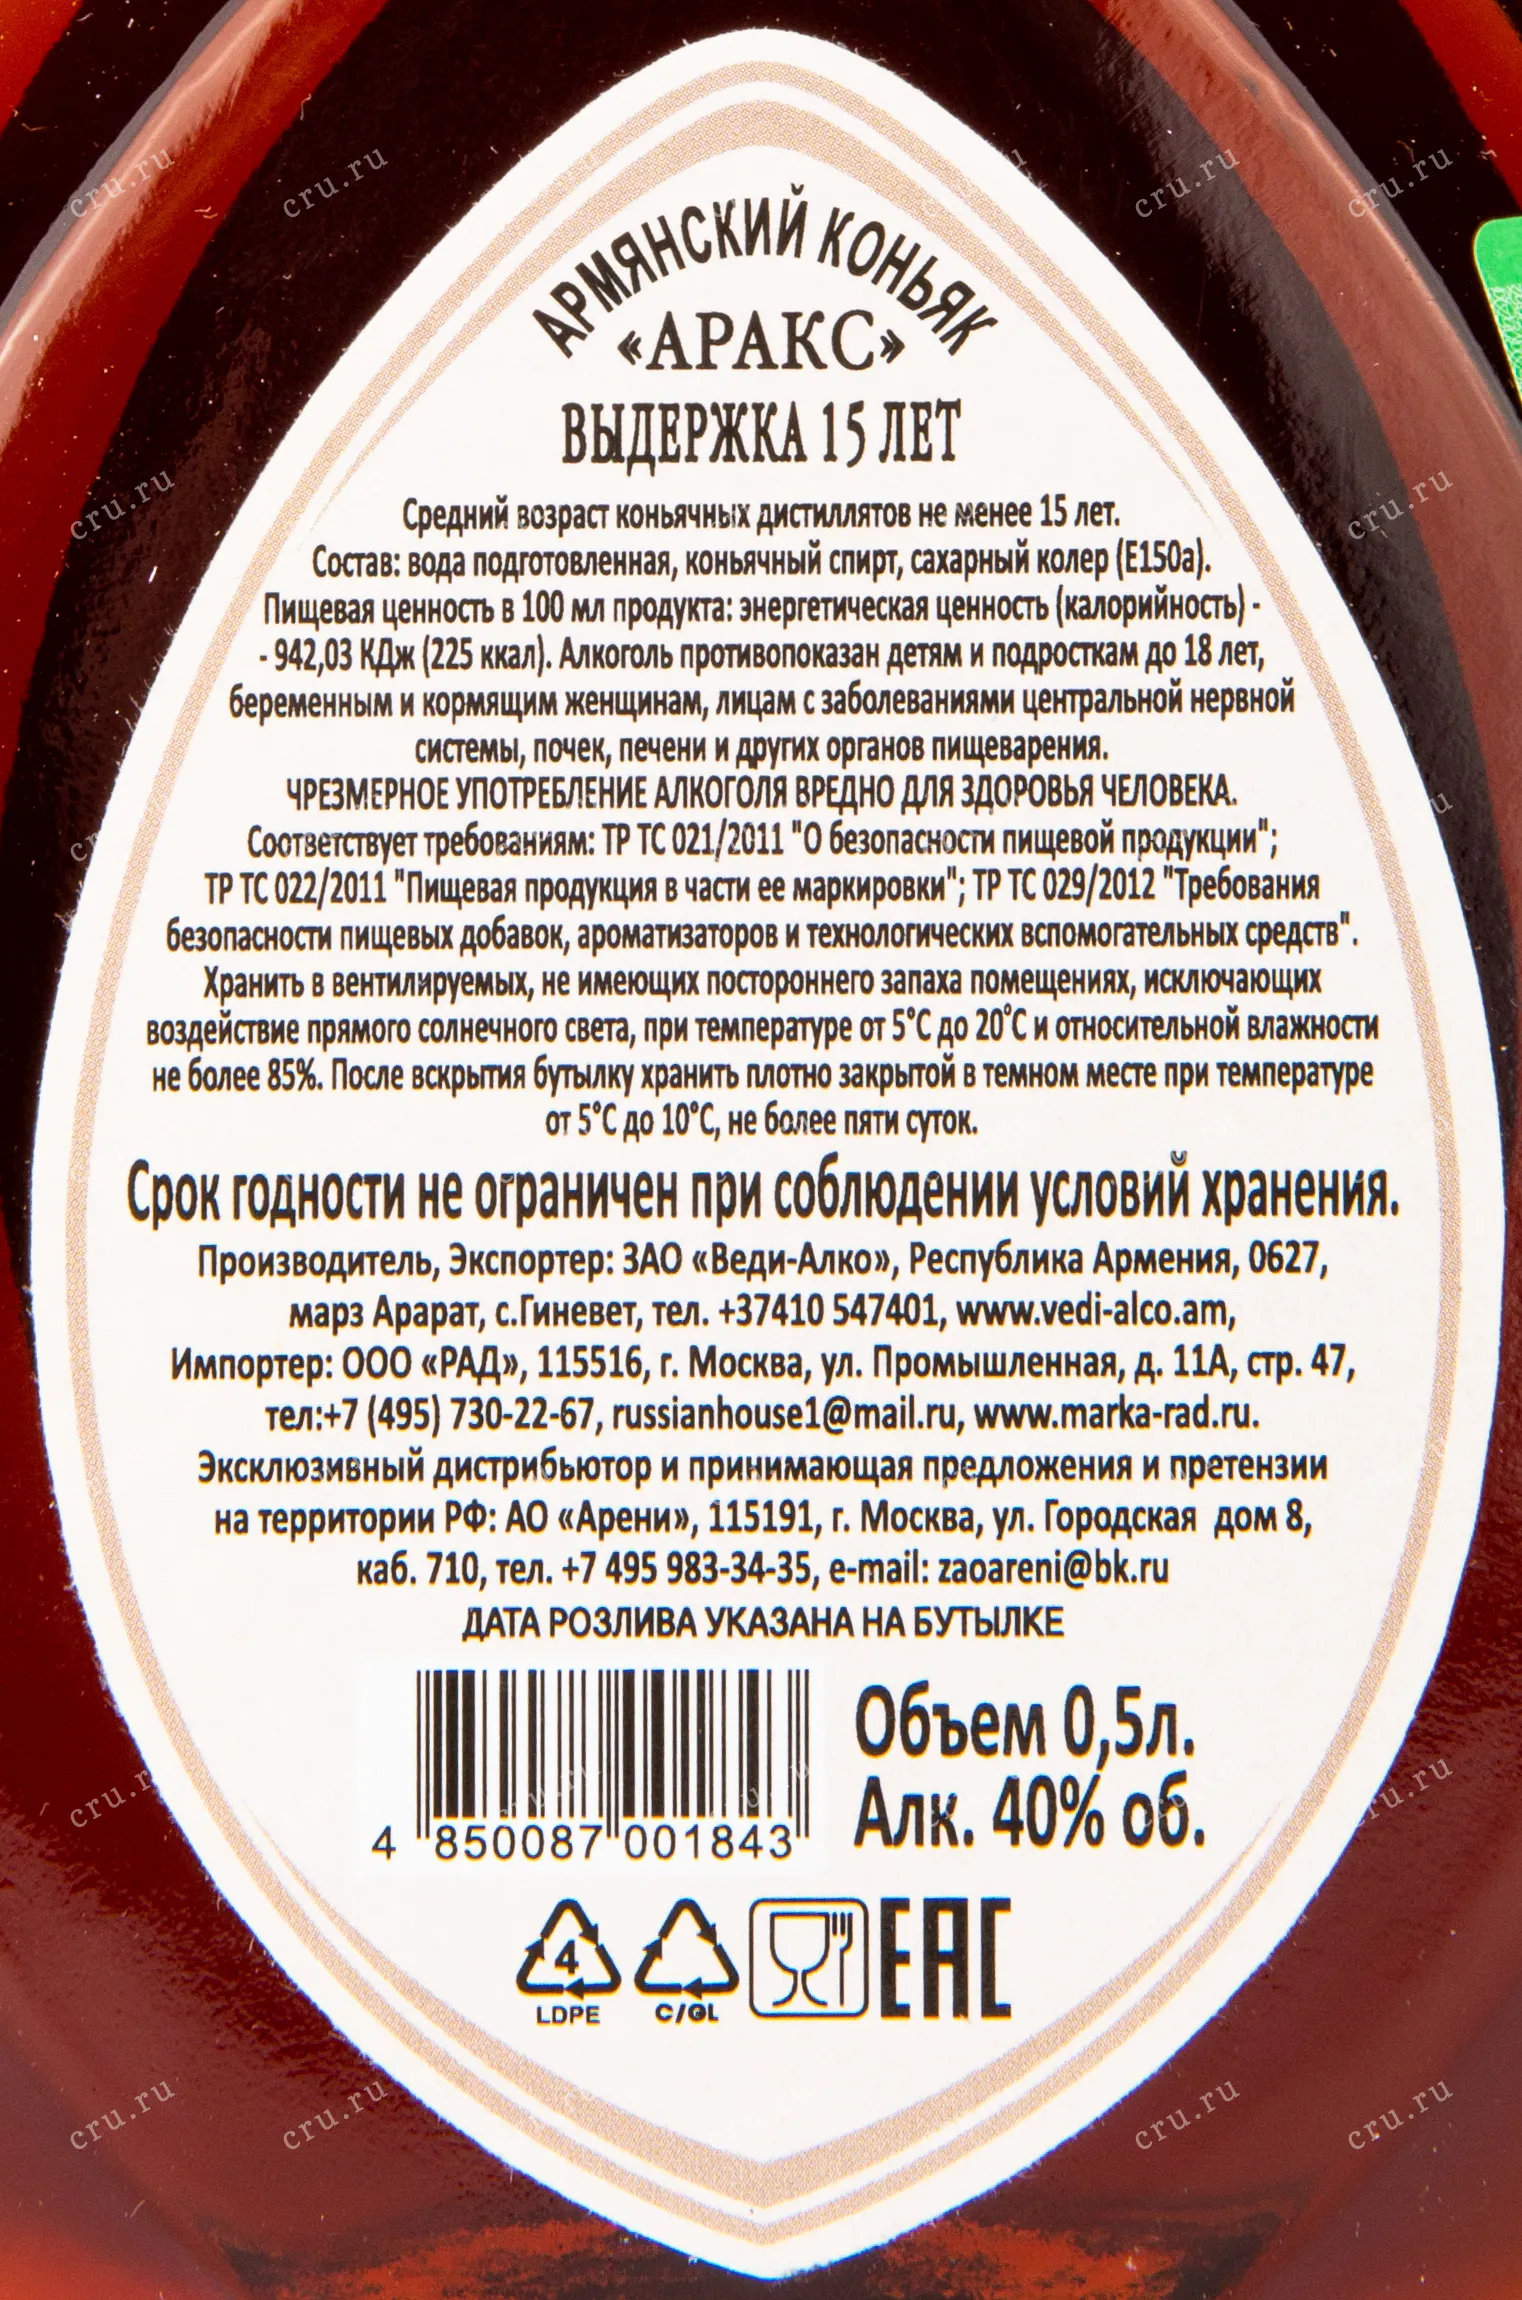 Купить Коньяк «Армянский алфавит» 3 года по оптовым ценам в Москве от Прошянского коньячного завода